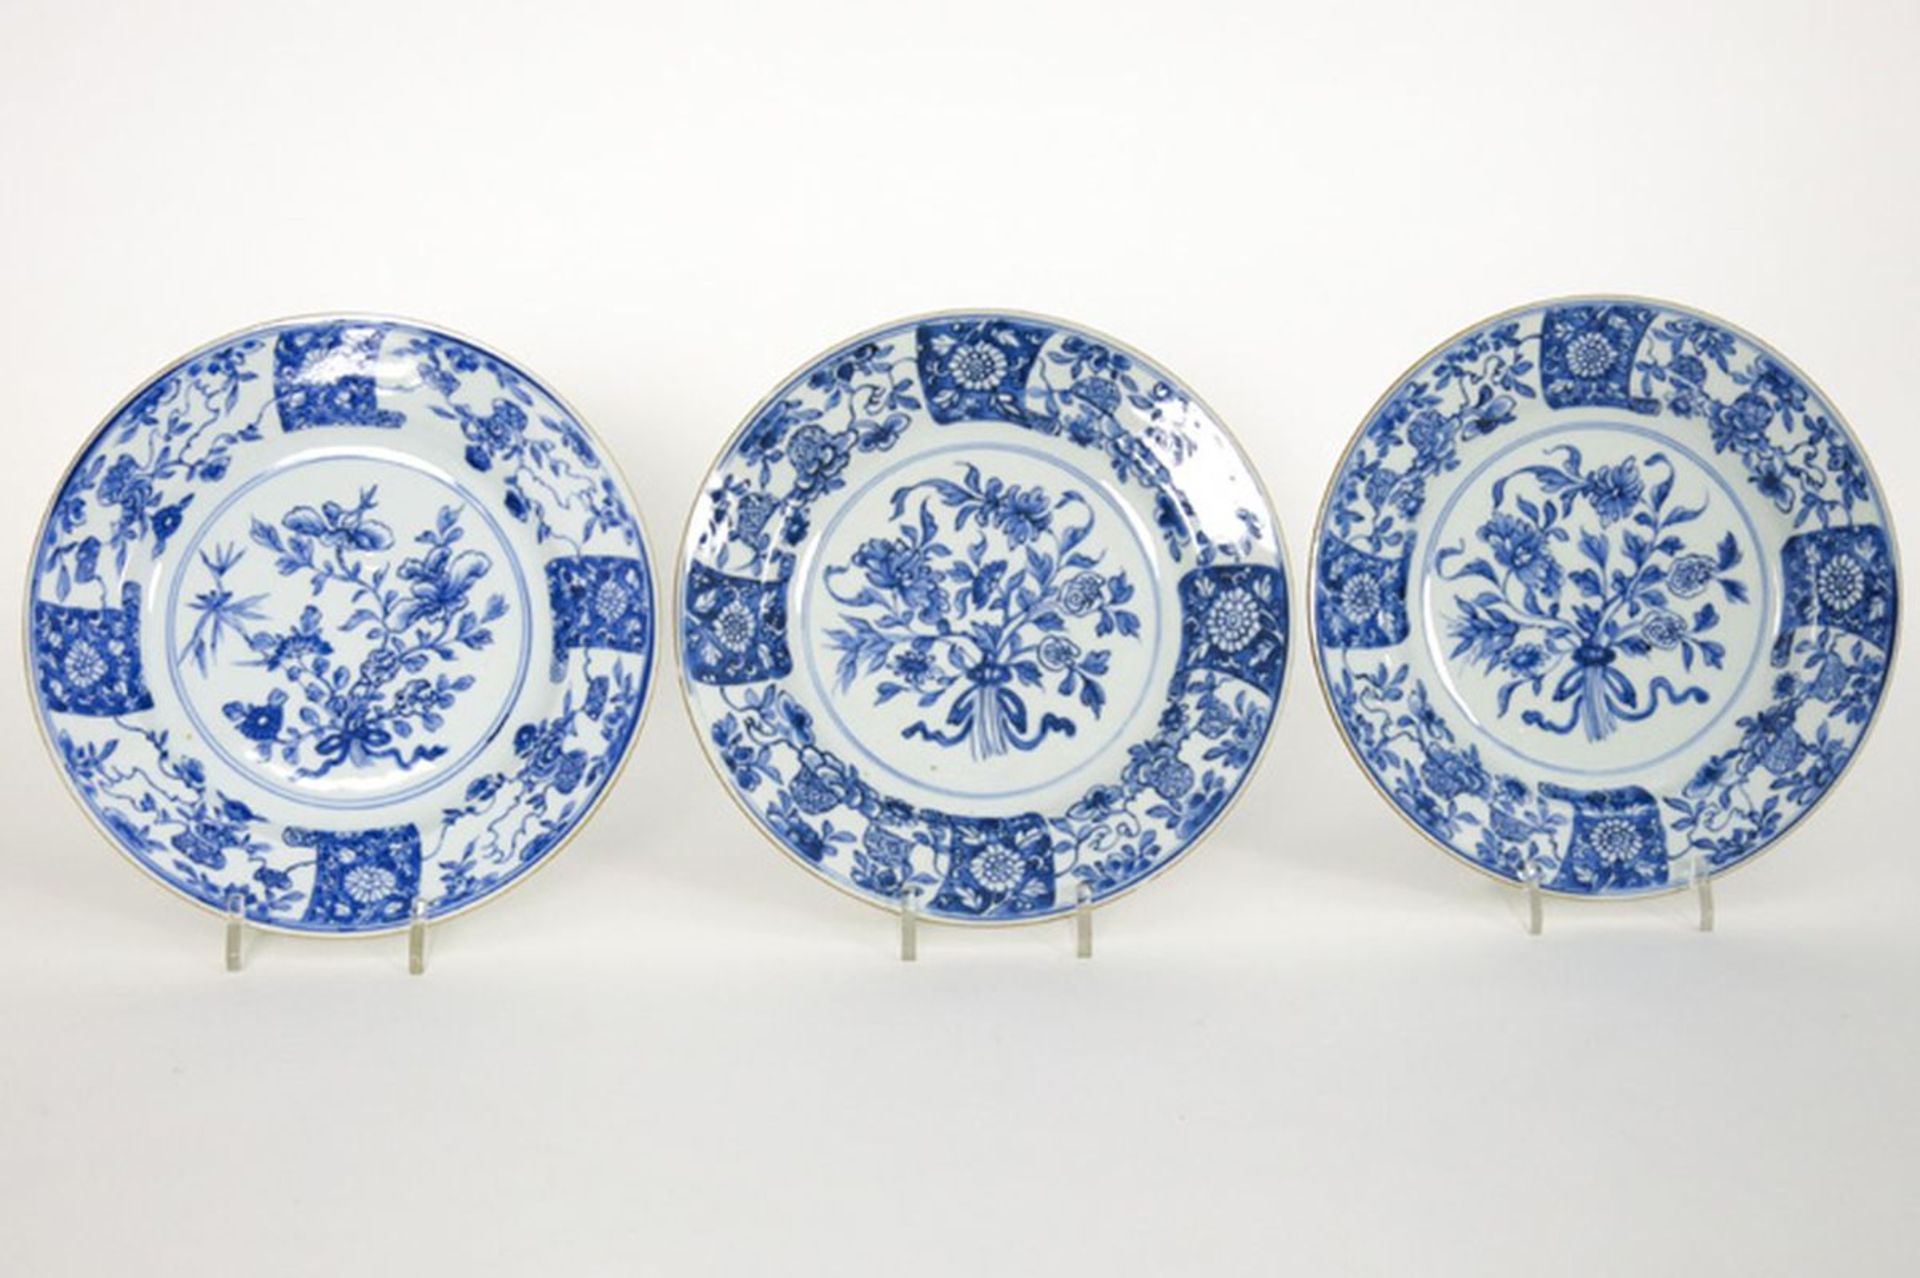 Reeks van drie achttiende eeuwse Chinese borden in porselein met een blauwwit [...]